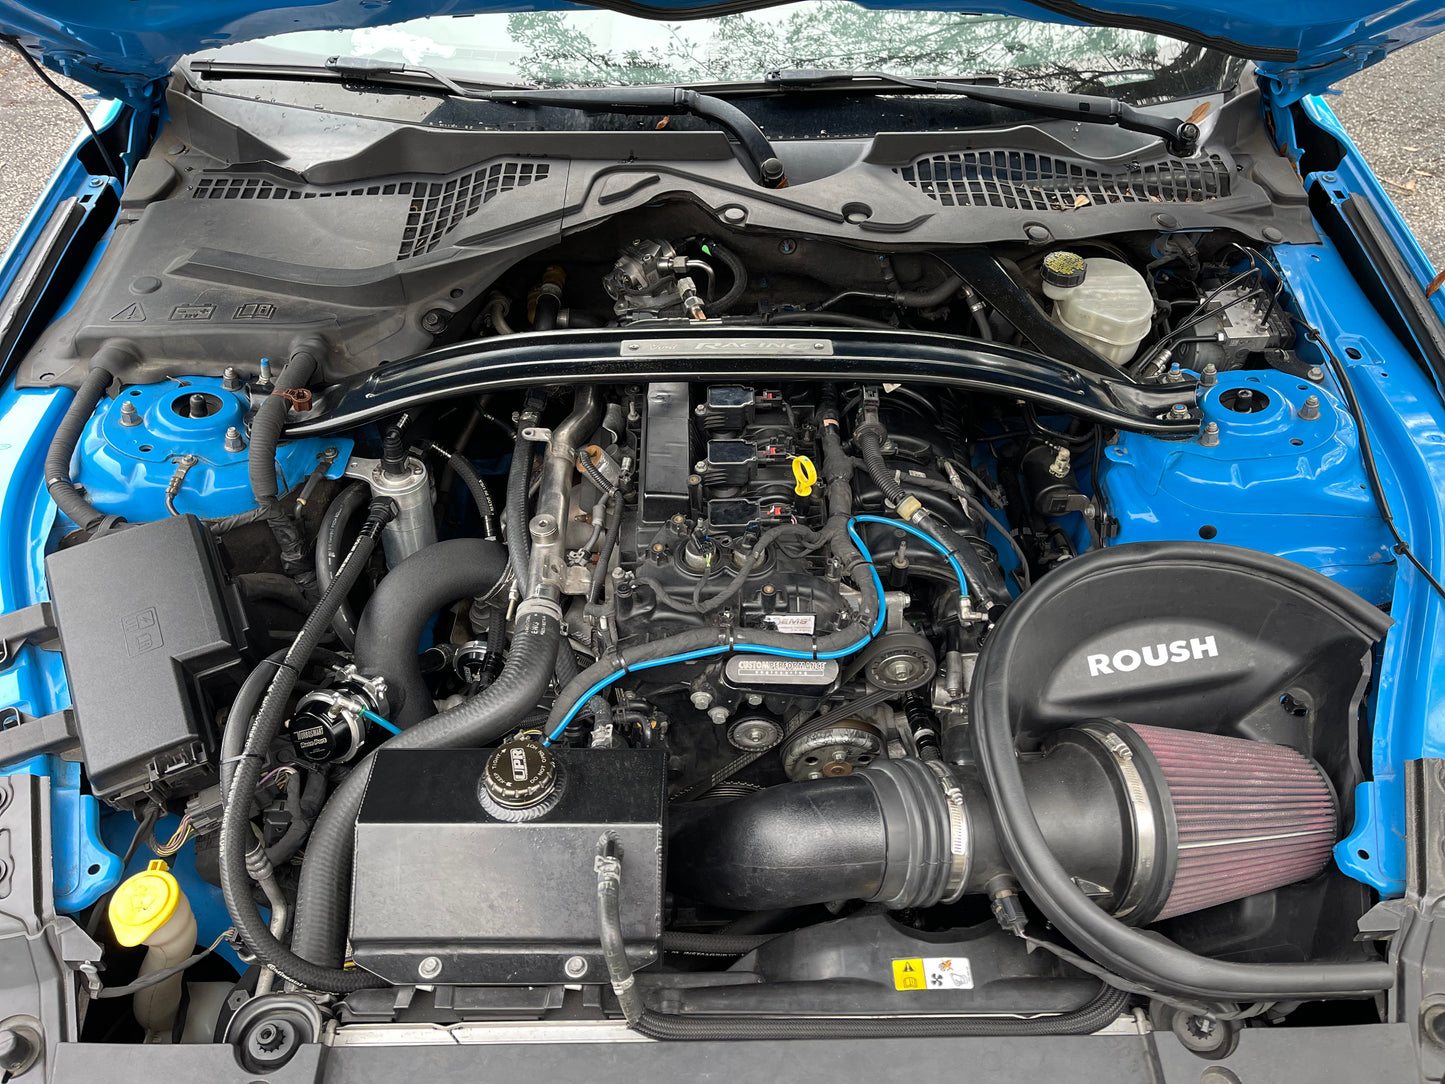 UPR Products 2015+ Ford Mustang Tanque de expansión de refrigerante (aluminio) (se adapta a Ecoboost, GT o Cyclone)